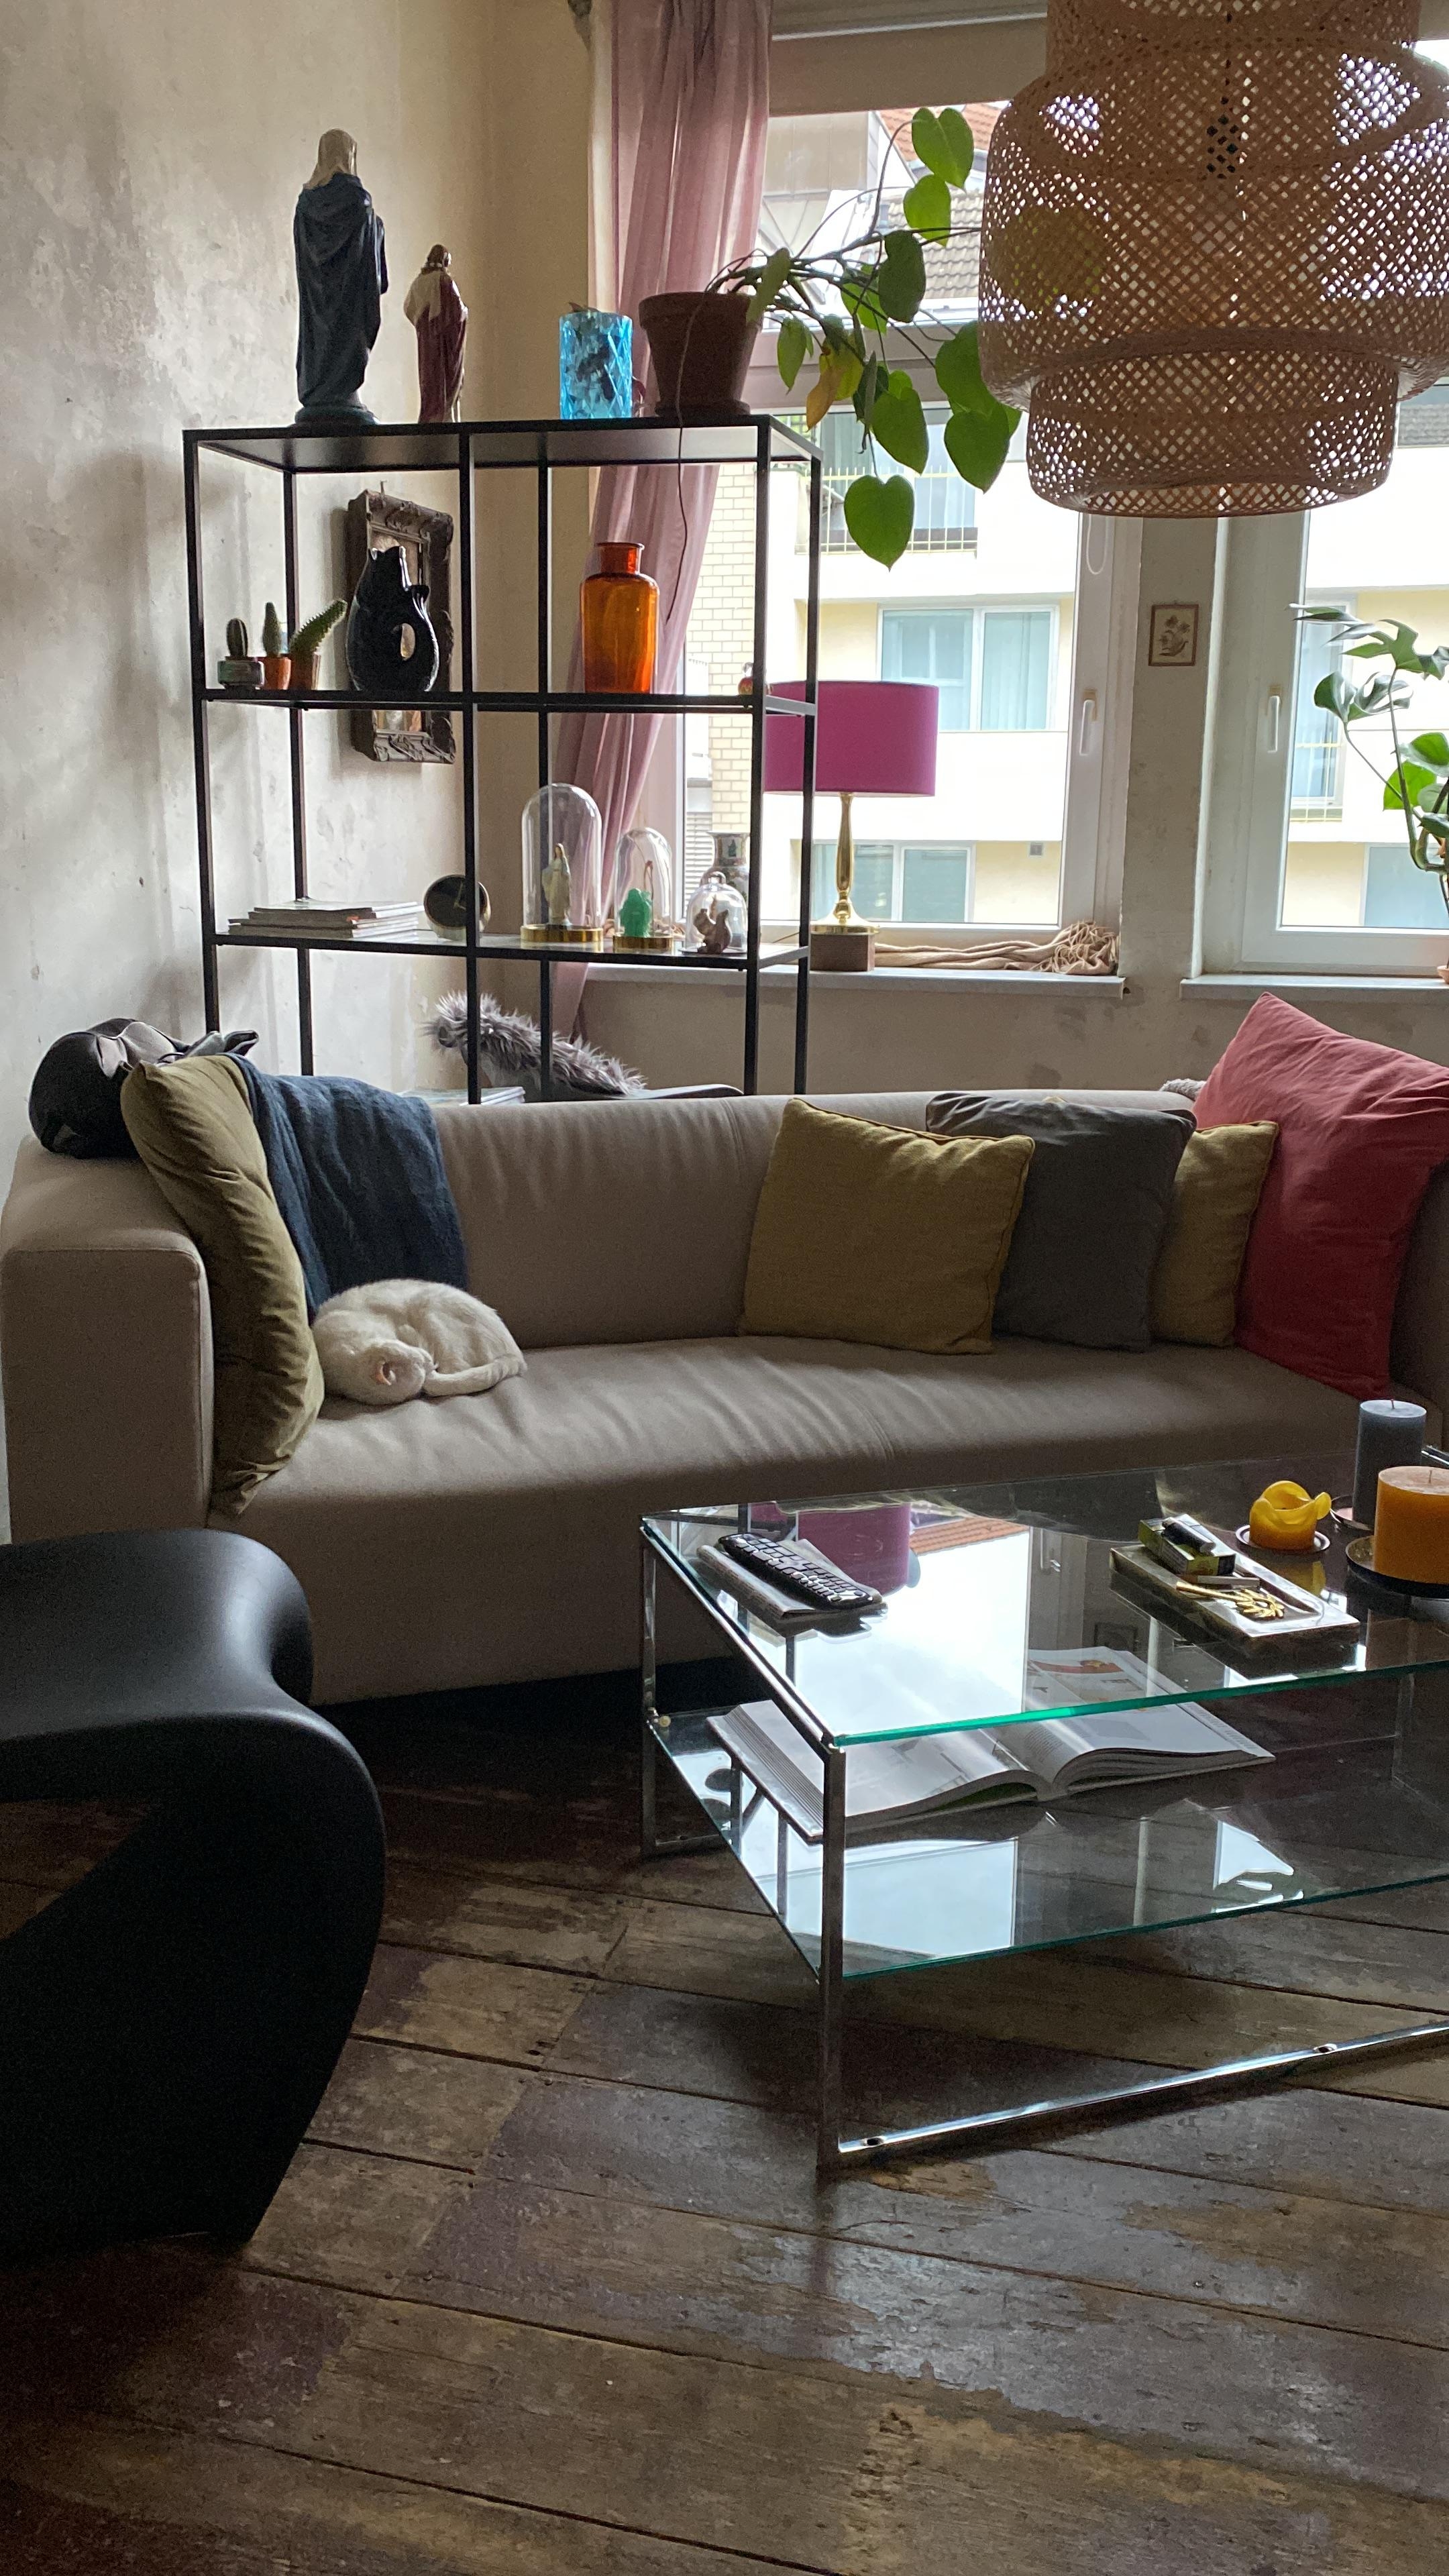 Jetzt steht das Sofa (hier mit Katzenrolle couchwärts) mal schräg im Raum... #wohnzimmer#livingroom#vintage#gebraucht